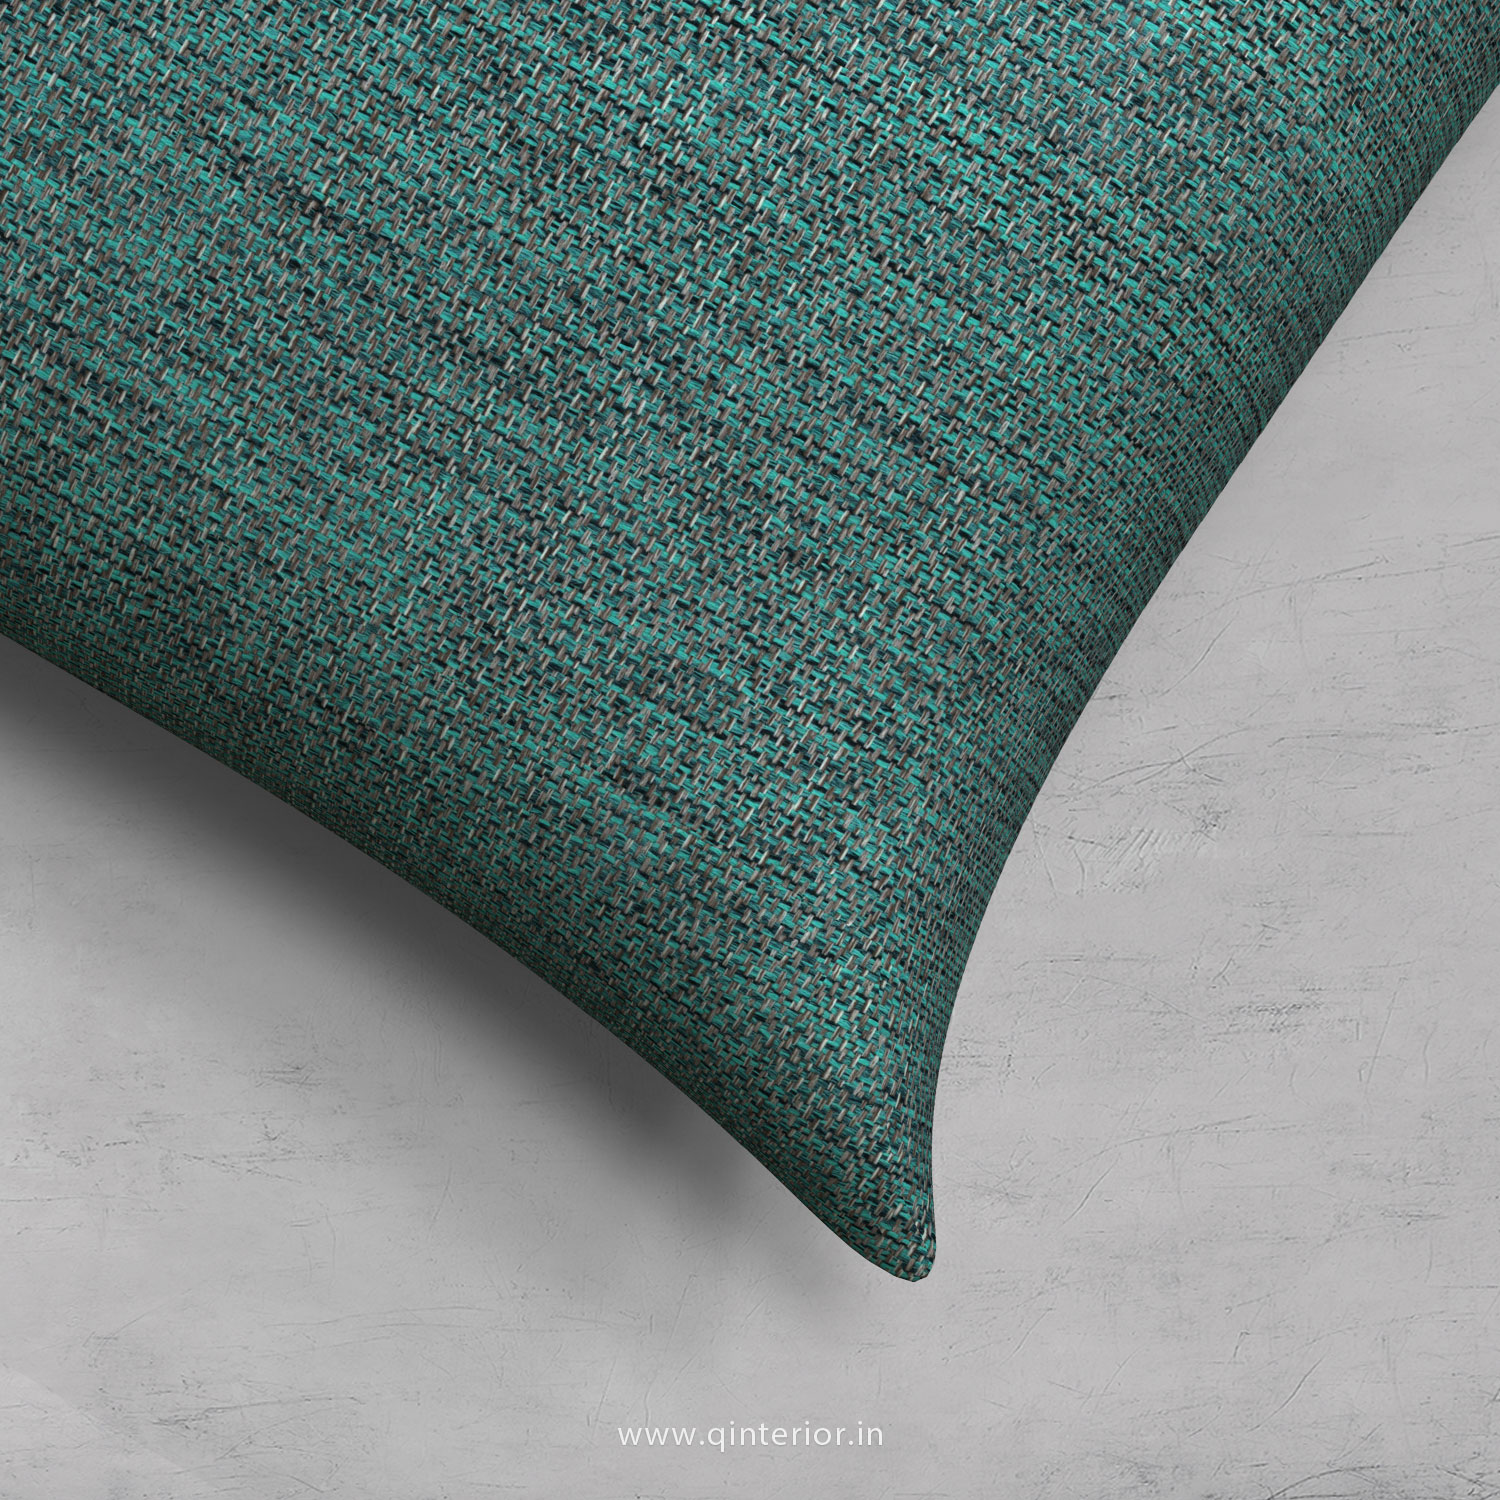 Cushion With Cushion Cover in Jacquard - CUS001 JQ23